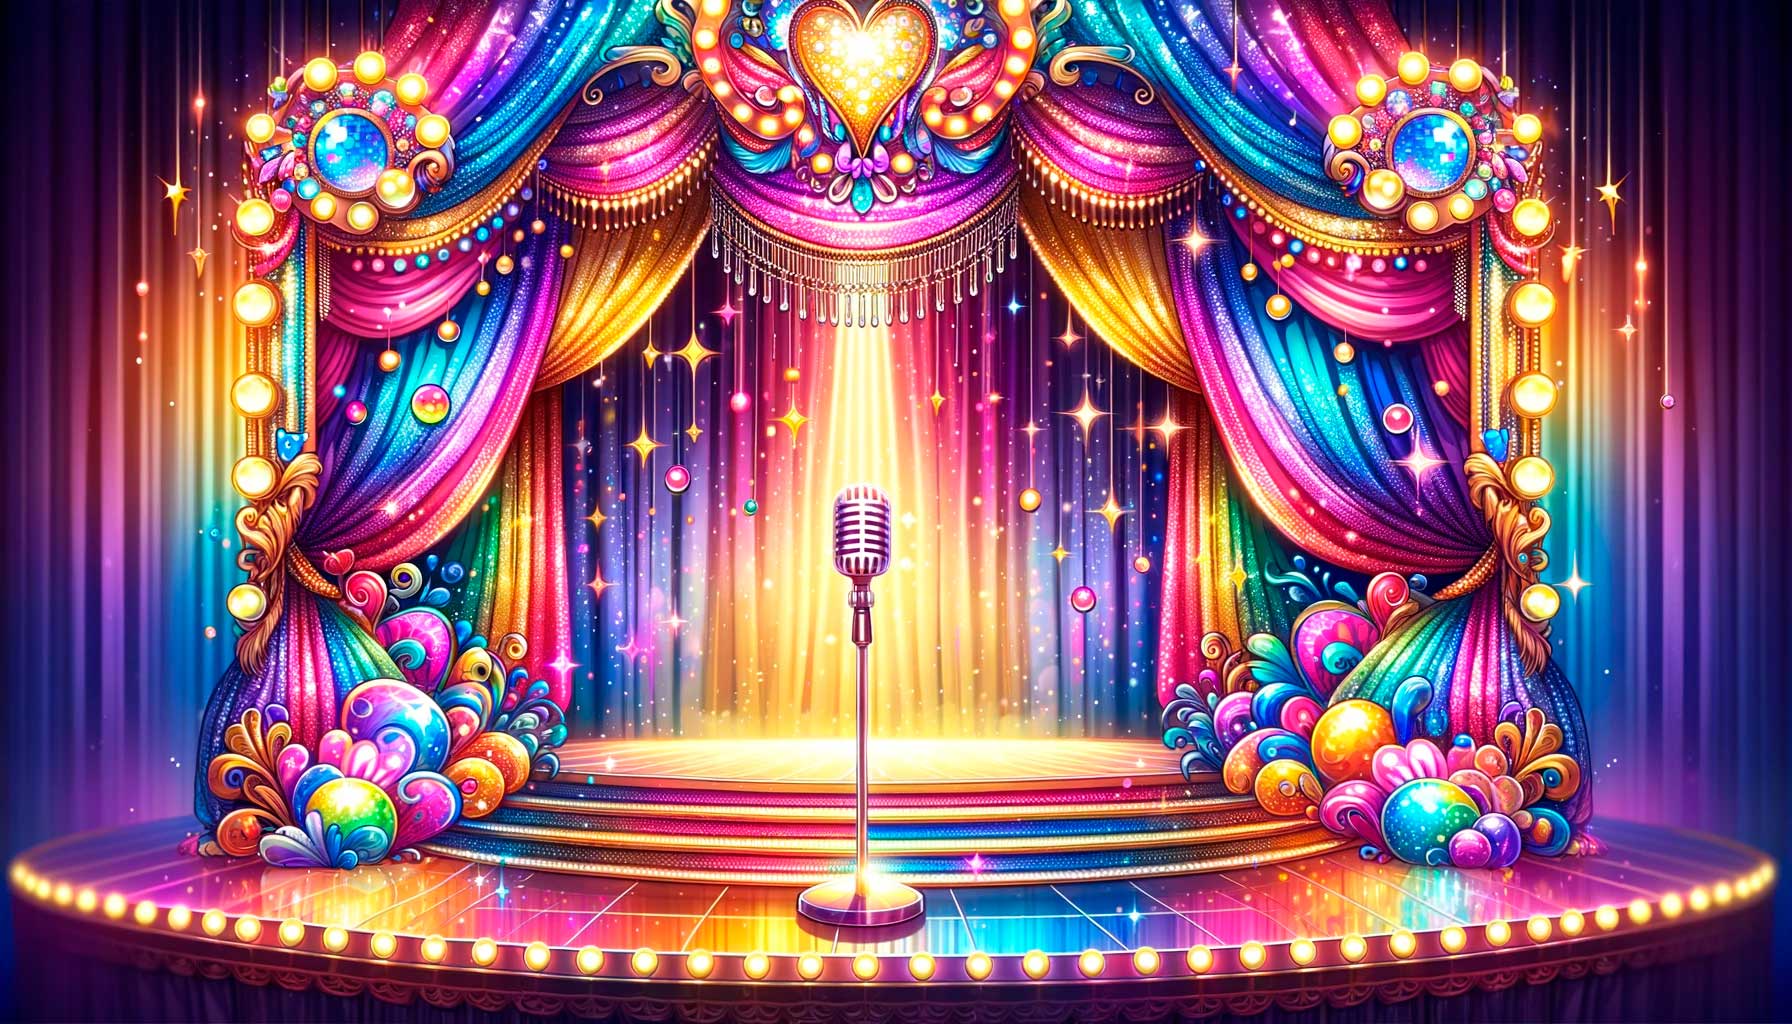 La imagen muestra un escenario de drag queen lleno de vida y color en formato cuadrado. Cortinas chispeantes y luces deslumbrantes crean un fondo espectacular, con un soporte de micrófono reluciente en primer plano.